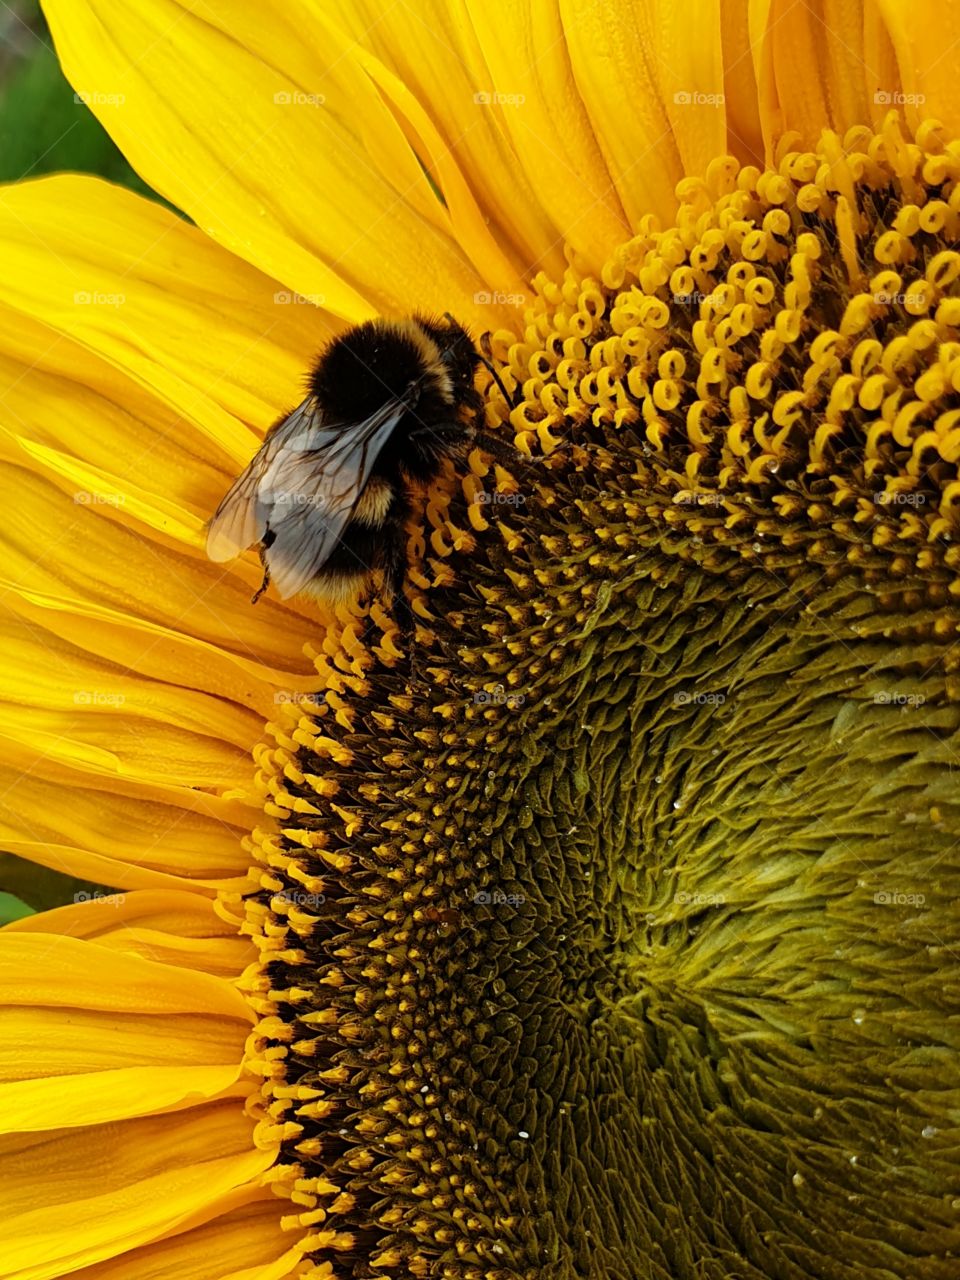 A bumblebee on a sunflower. Closeup.